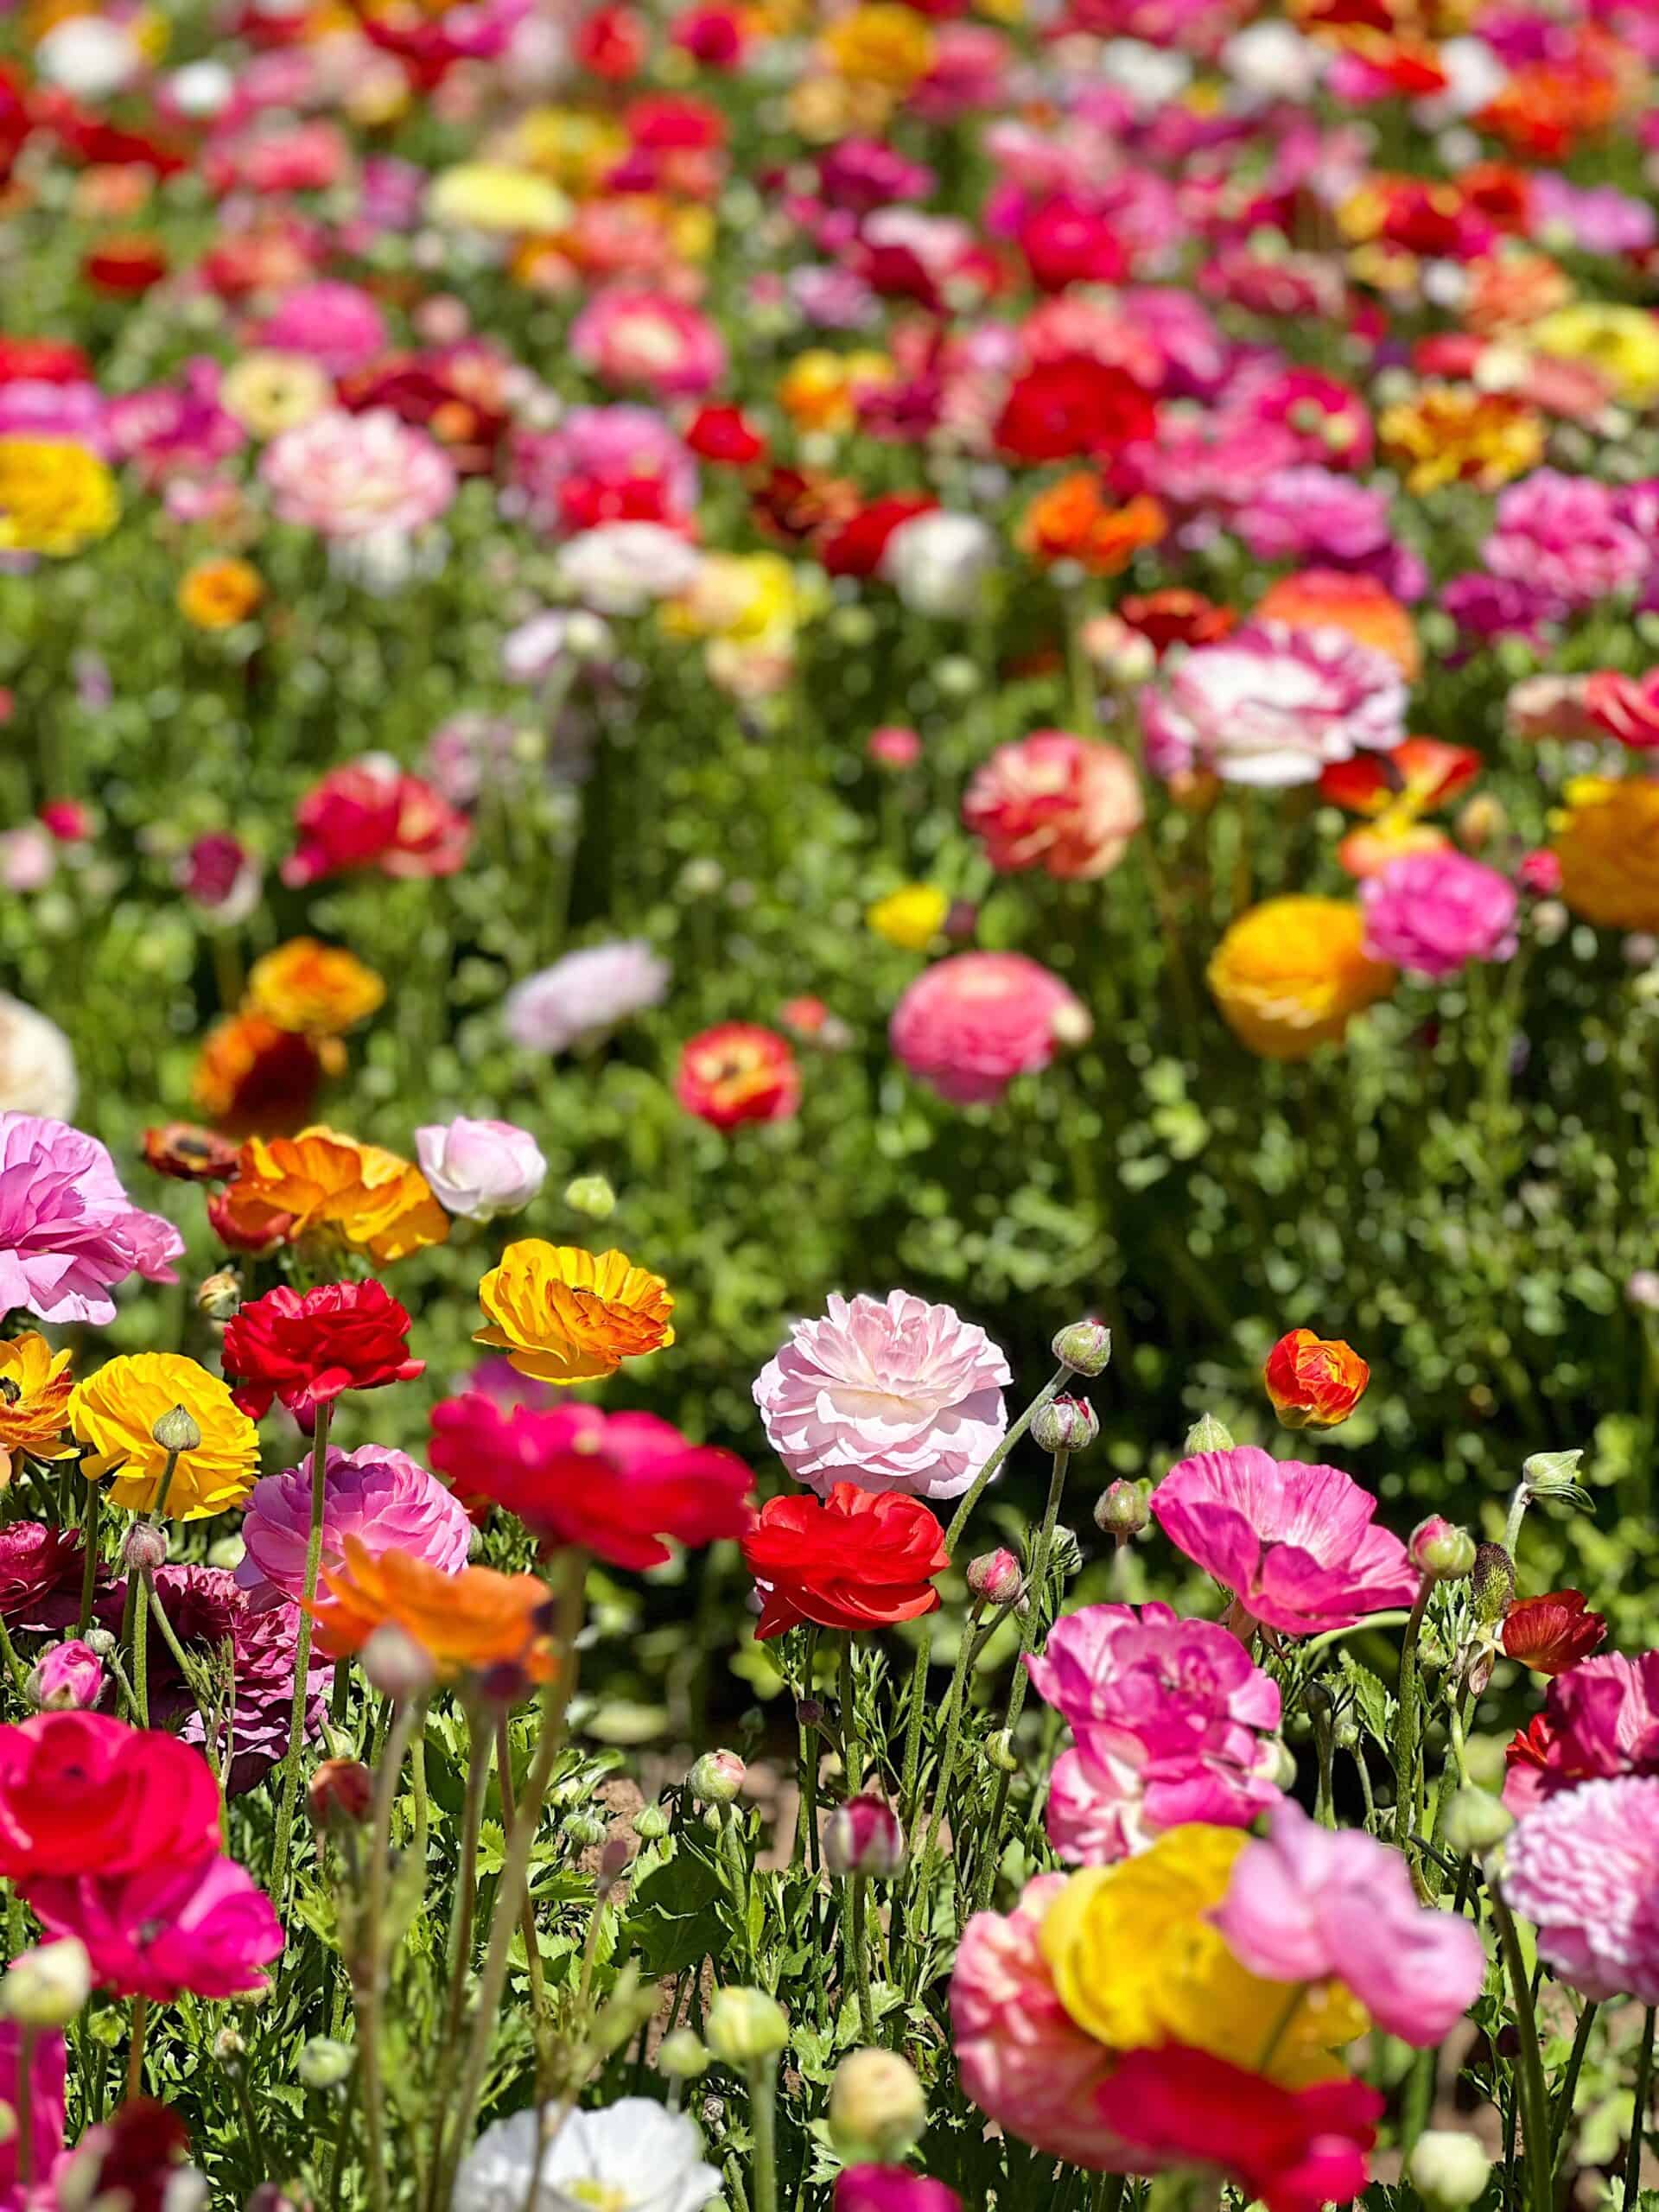 The Carlsbad Flower Fields